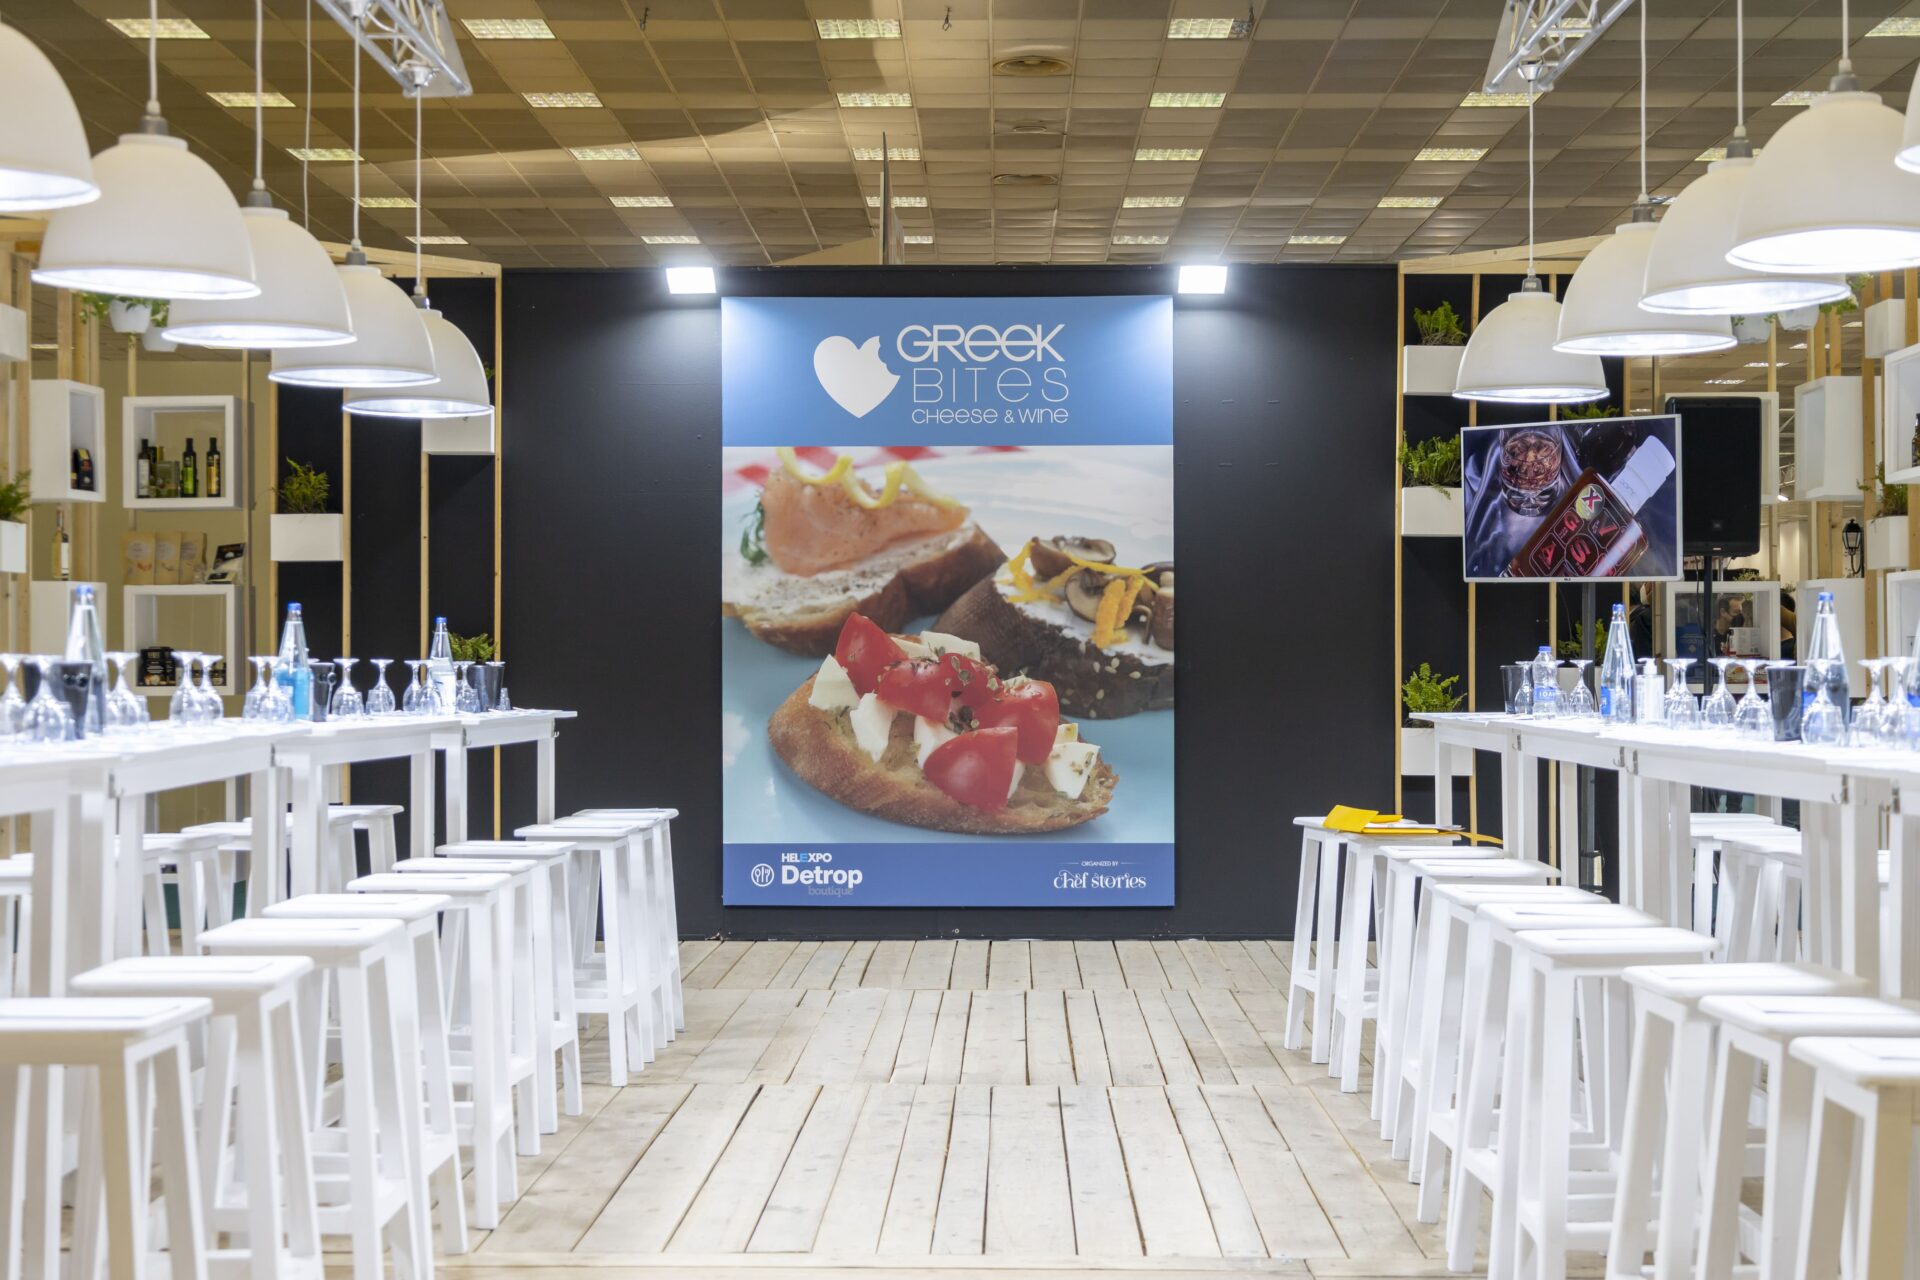 Detrop Boutique 2022, Greek Bites, April 2022, Organized by Chef Stories